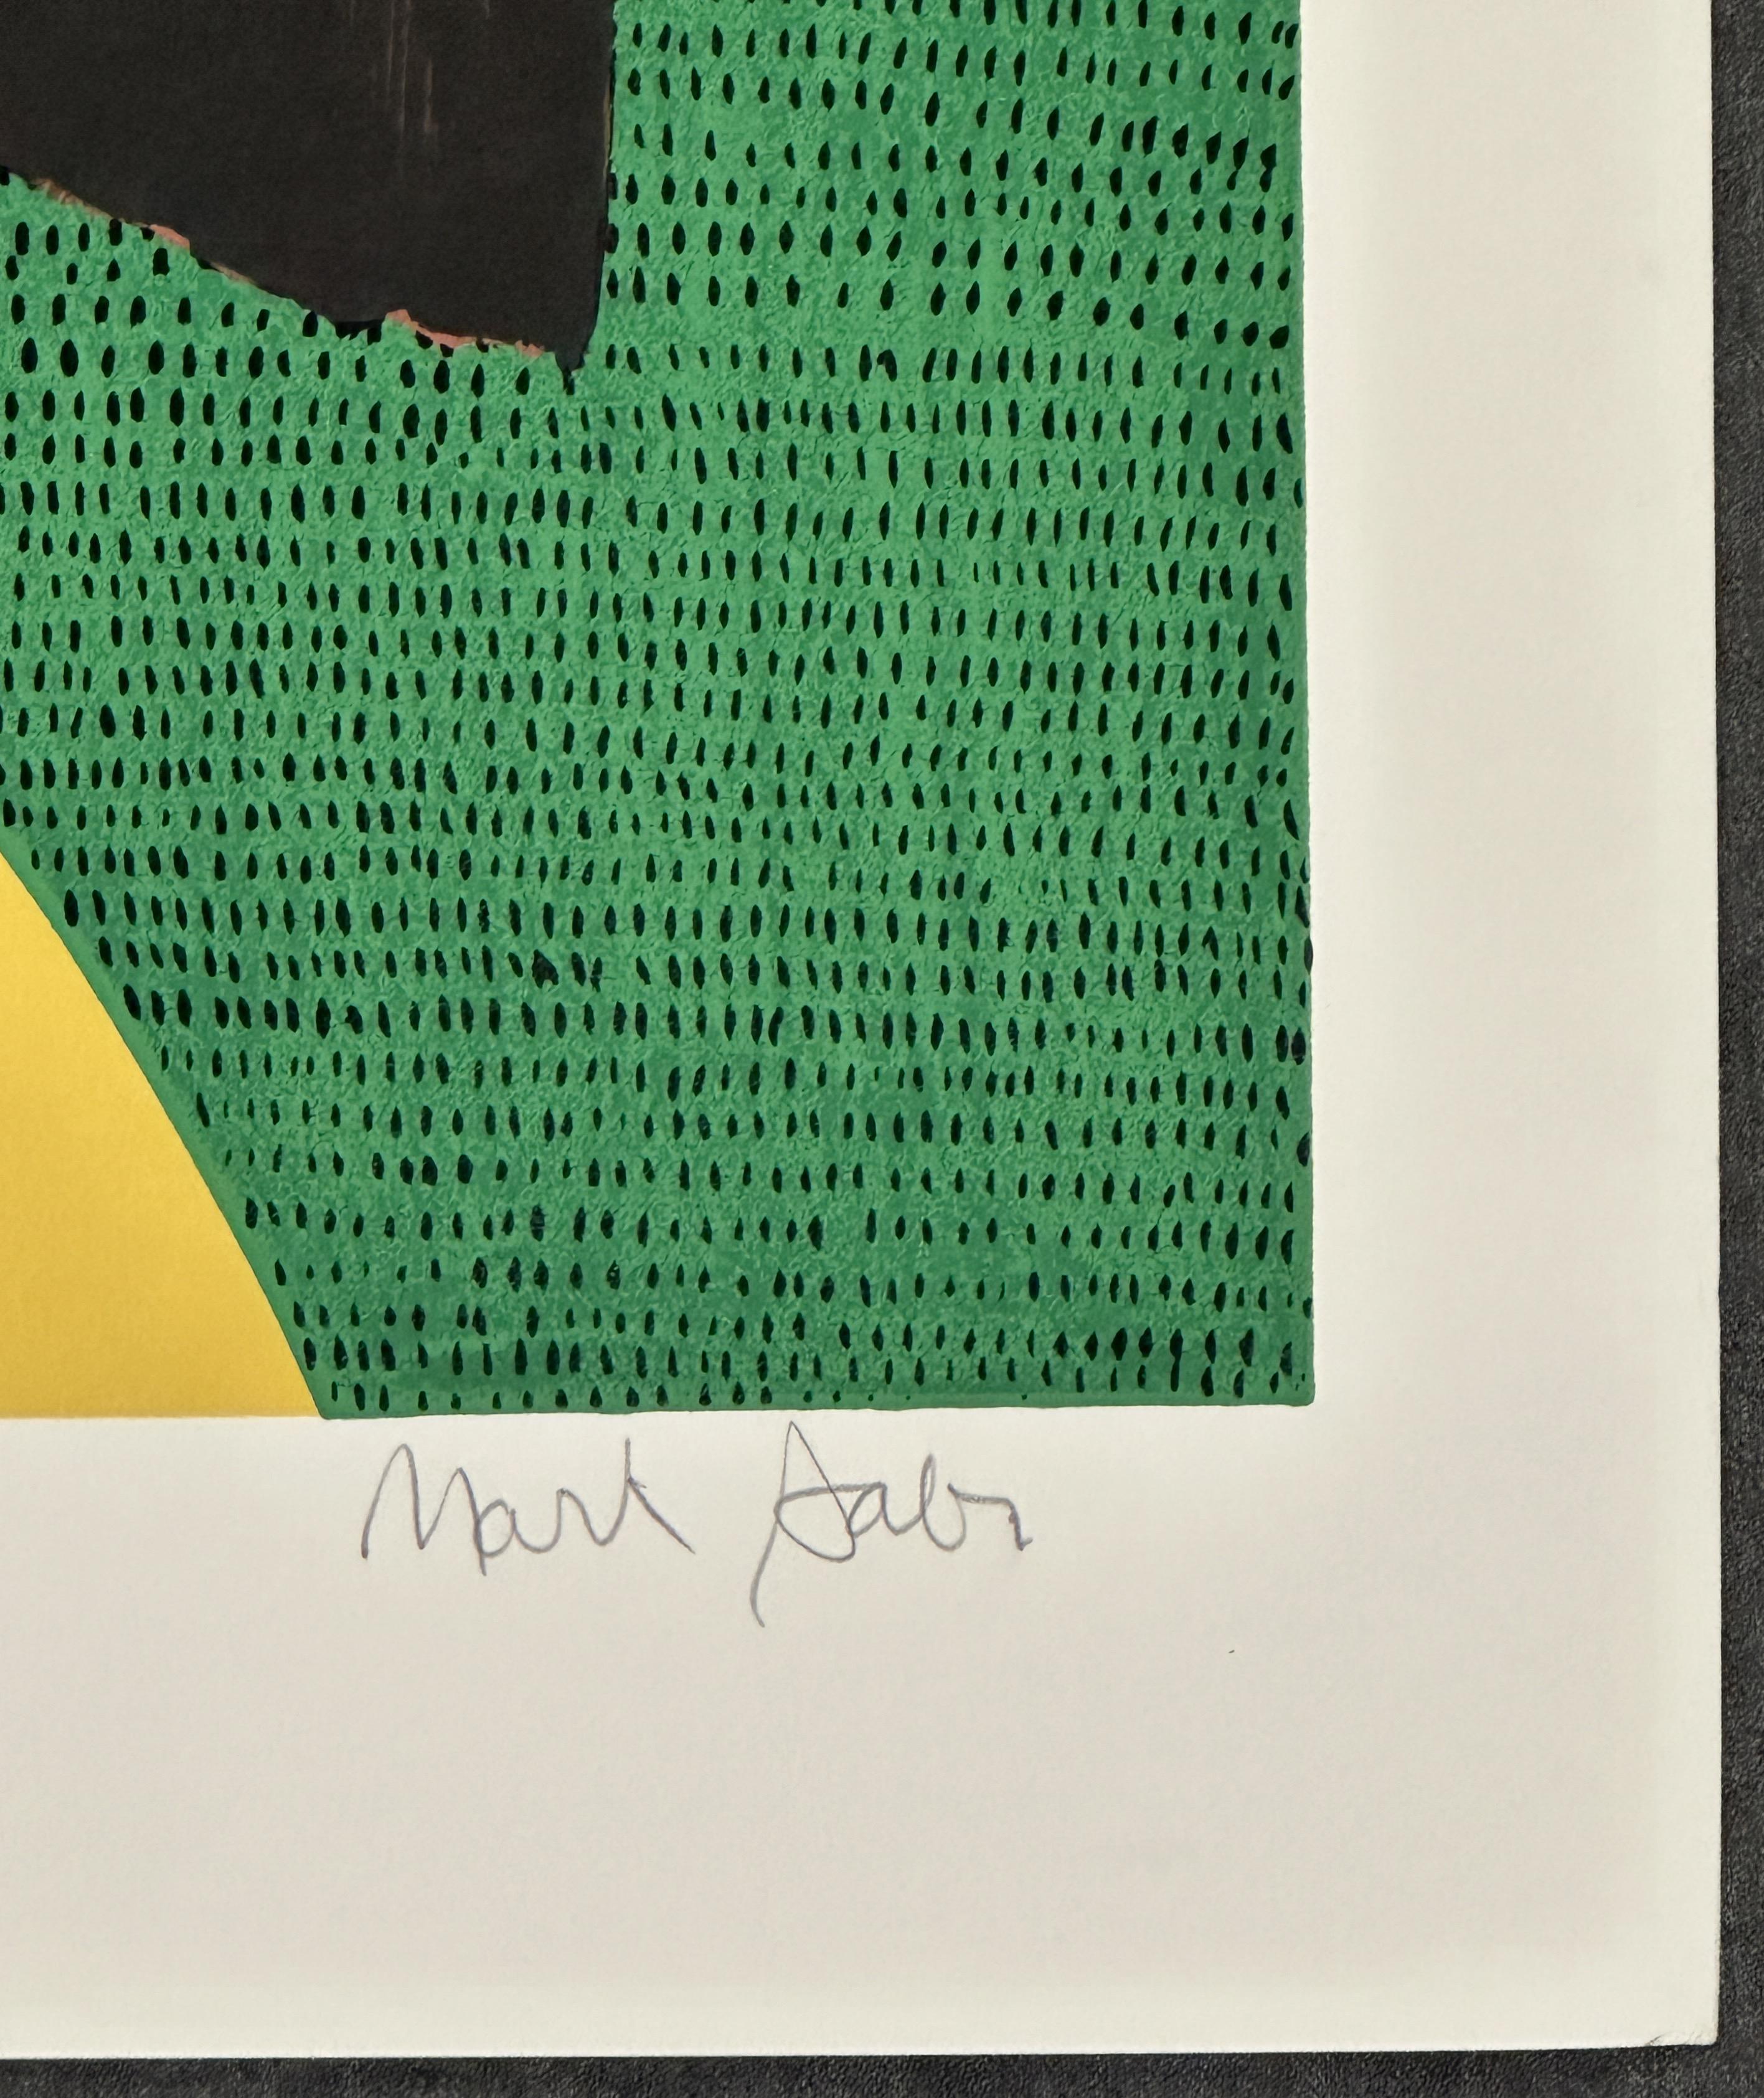 Mark Sabin
Der Mann im Wald - 1980 
Druck - 26'' x 34'' in
Auflage: mit Bleistift signiert und mit 234/250 bezeichnet


Mark Sabin ist ein phantasievoller Maler, der Elemente in einem Nebeneinander vermischt, das den Betrachter überrascht. Sabin